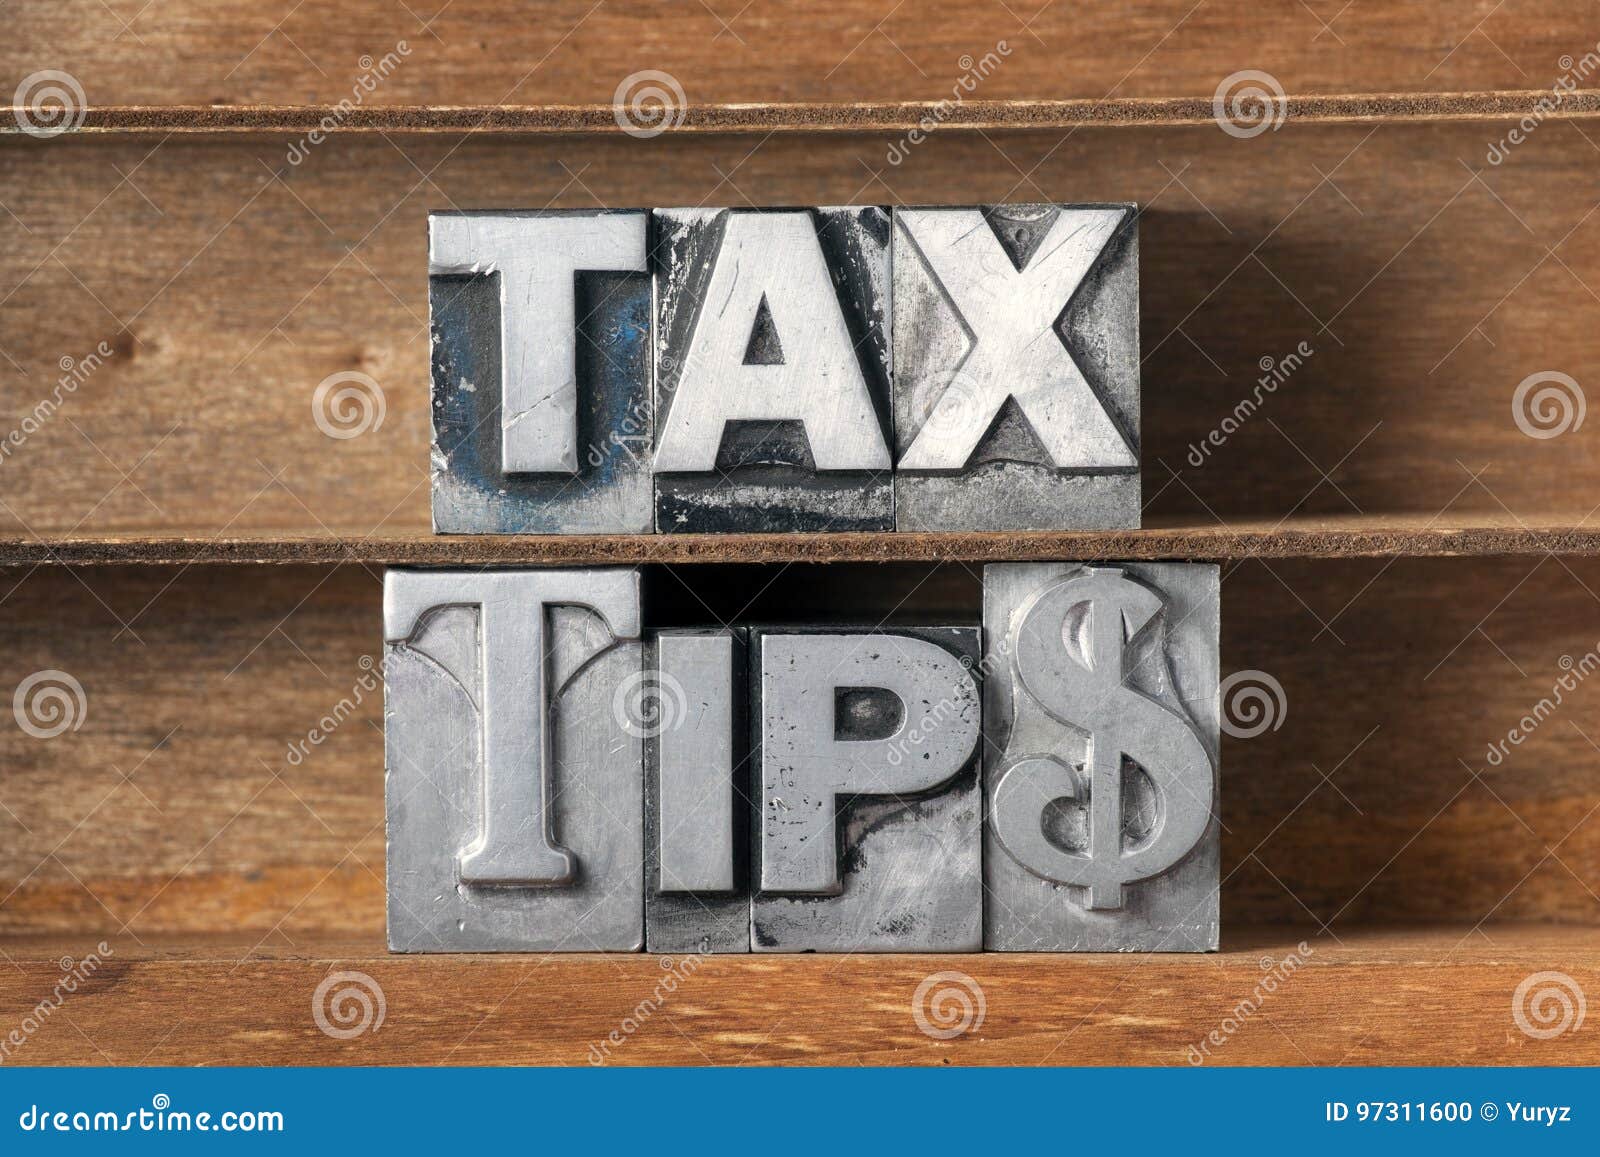 tax tips tray